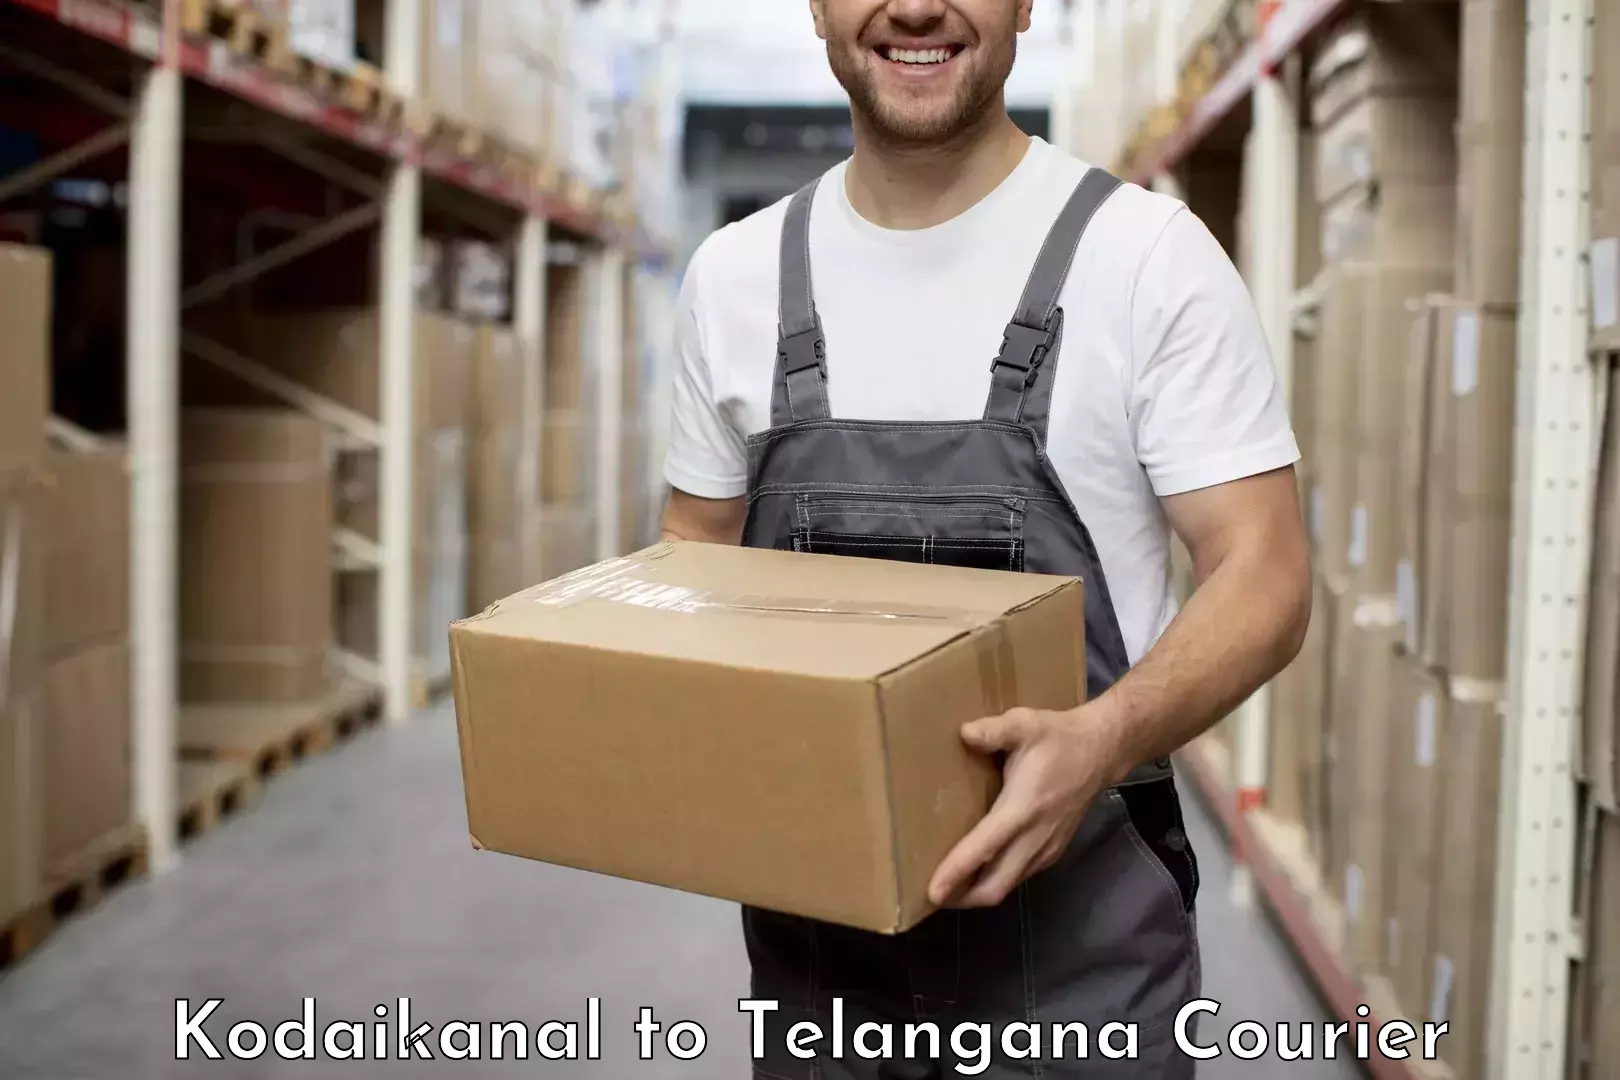 High-capacity courier solutions Kodaikanal to Mahabubabad